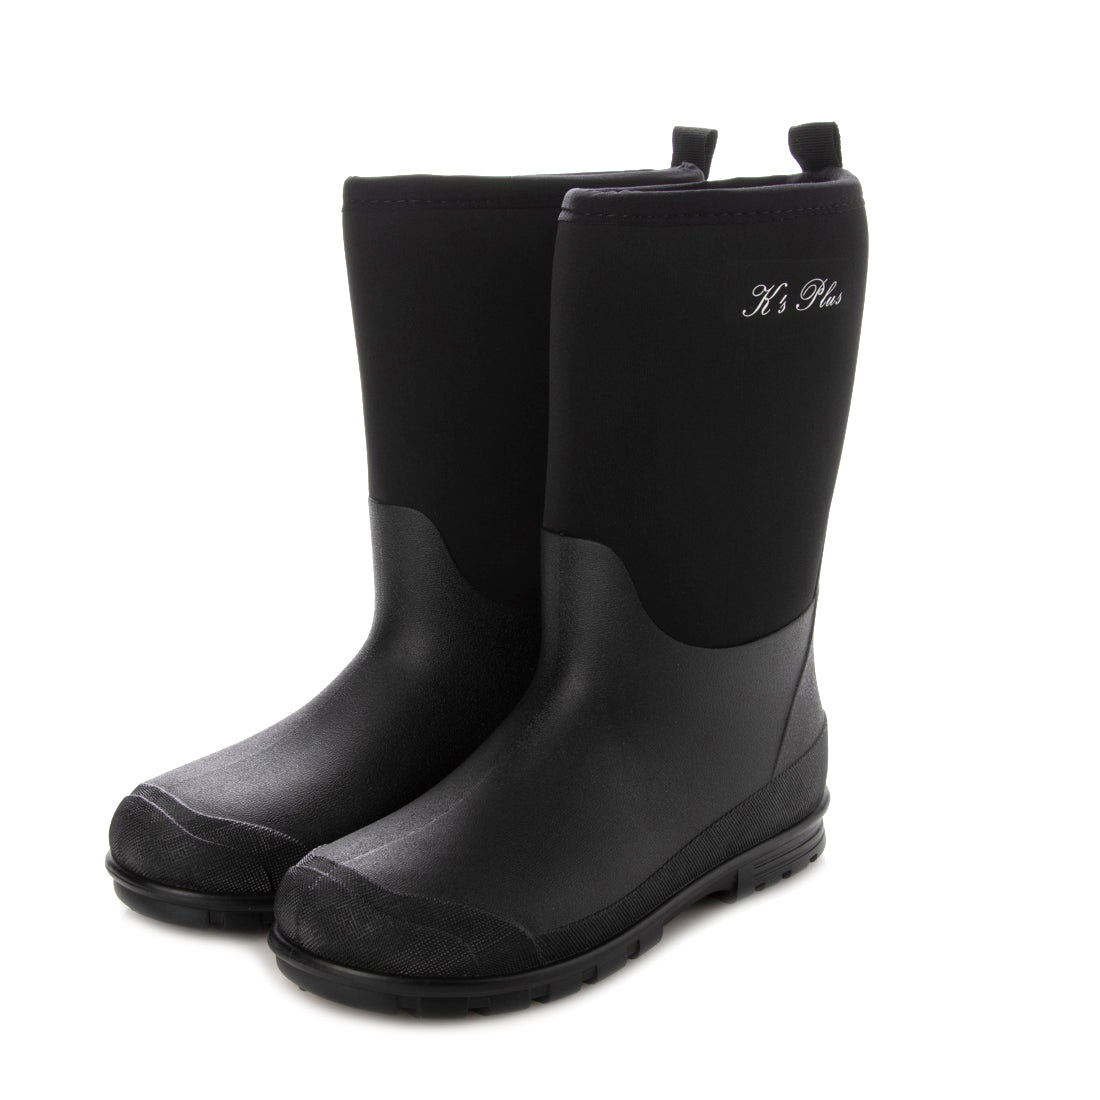  новый товар [21077-BLK-240]24cm Junior для резиновые сапоги / Neo pre n влагостойкая обувь, черный ro pre n материалы сапоги, дождь обувь 